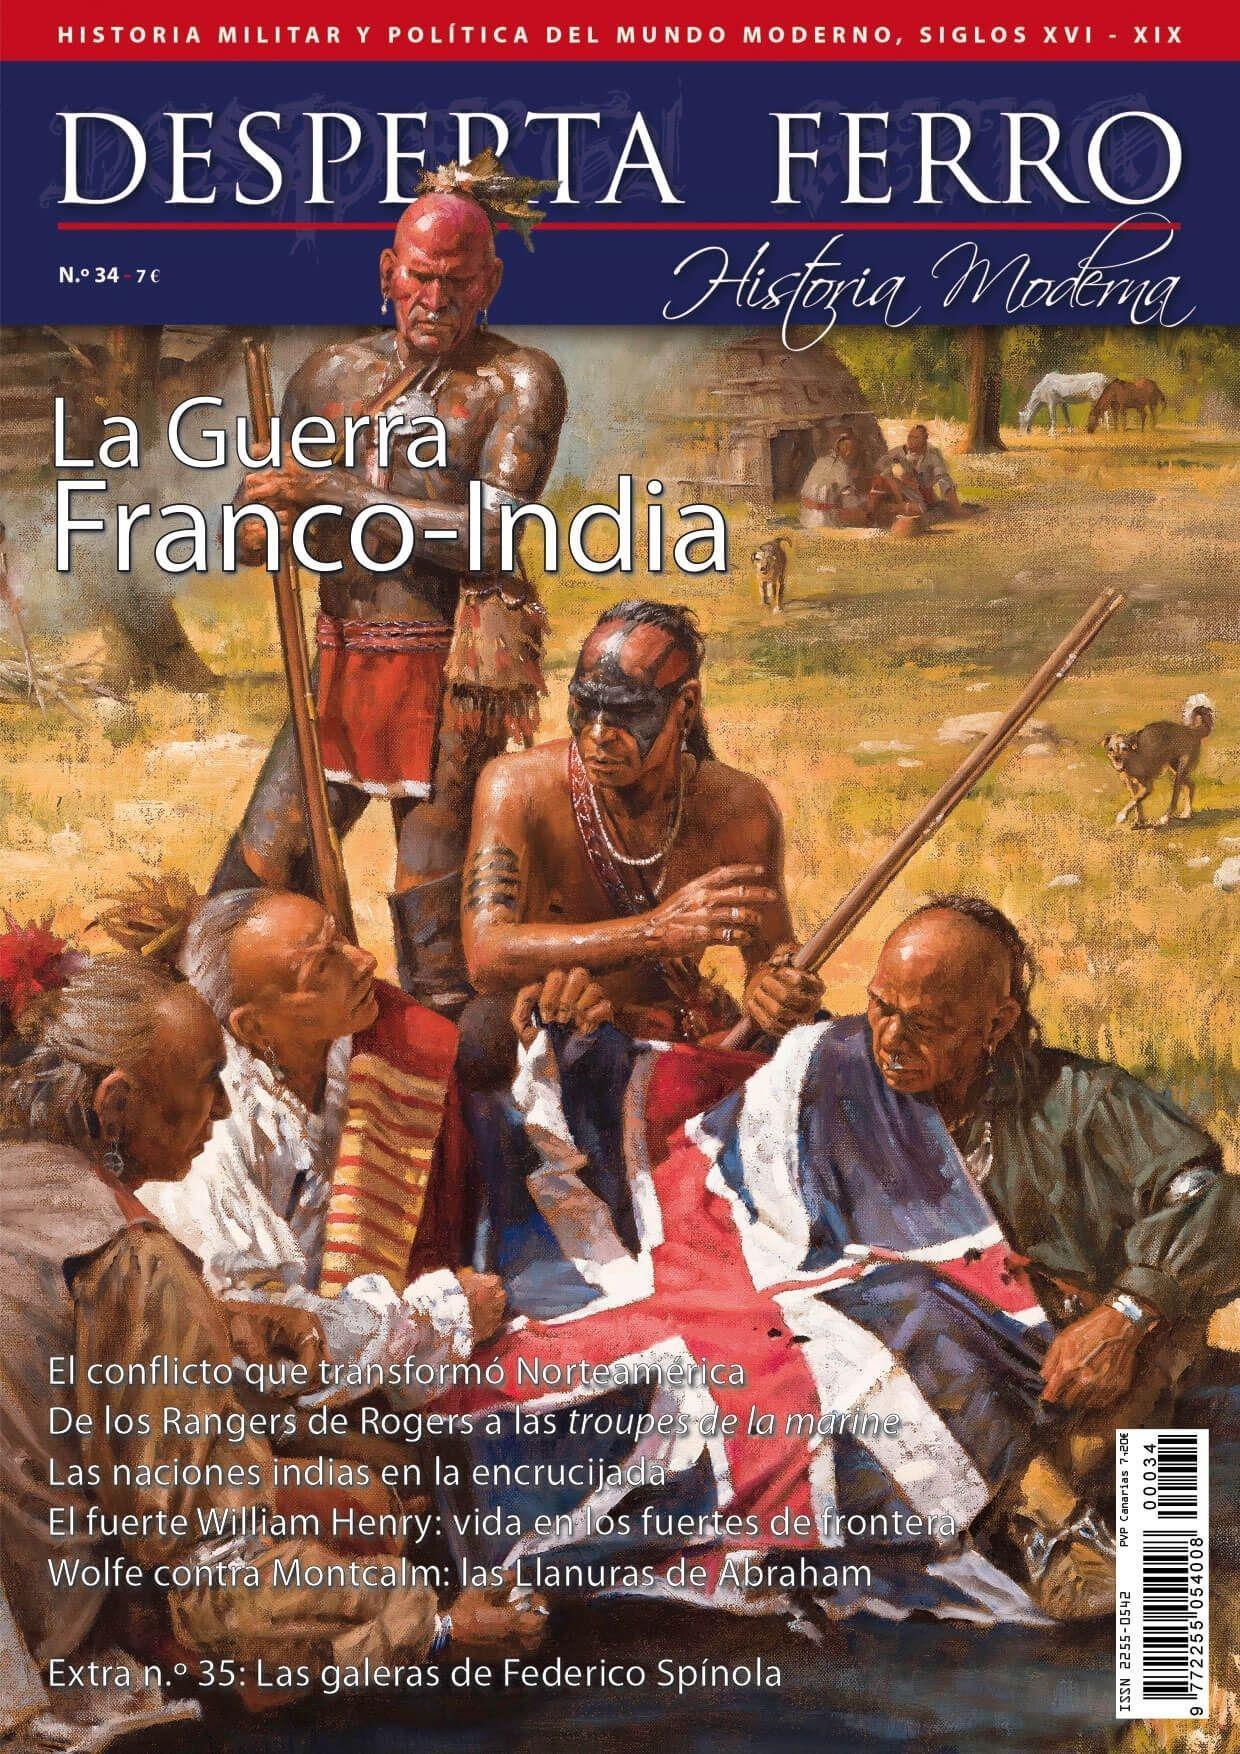 Desperta Ferro. Historia Moderna nº 34: La guerra franco-india